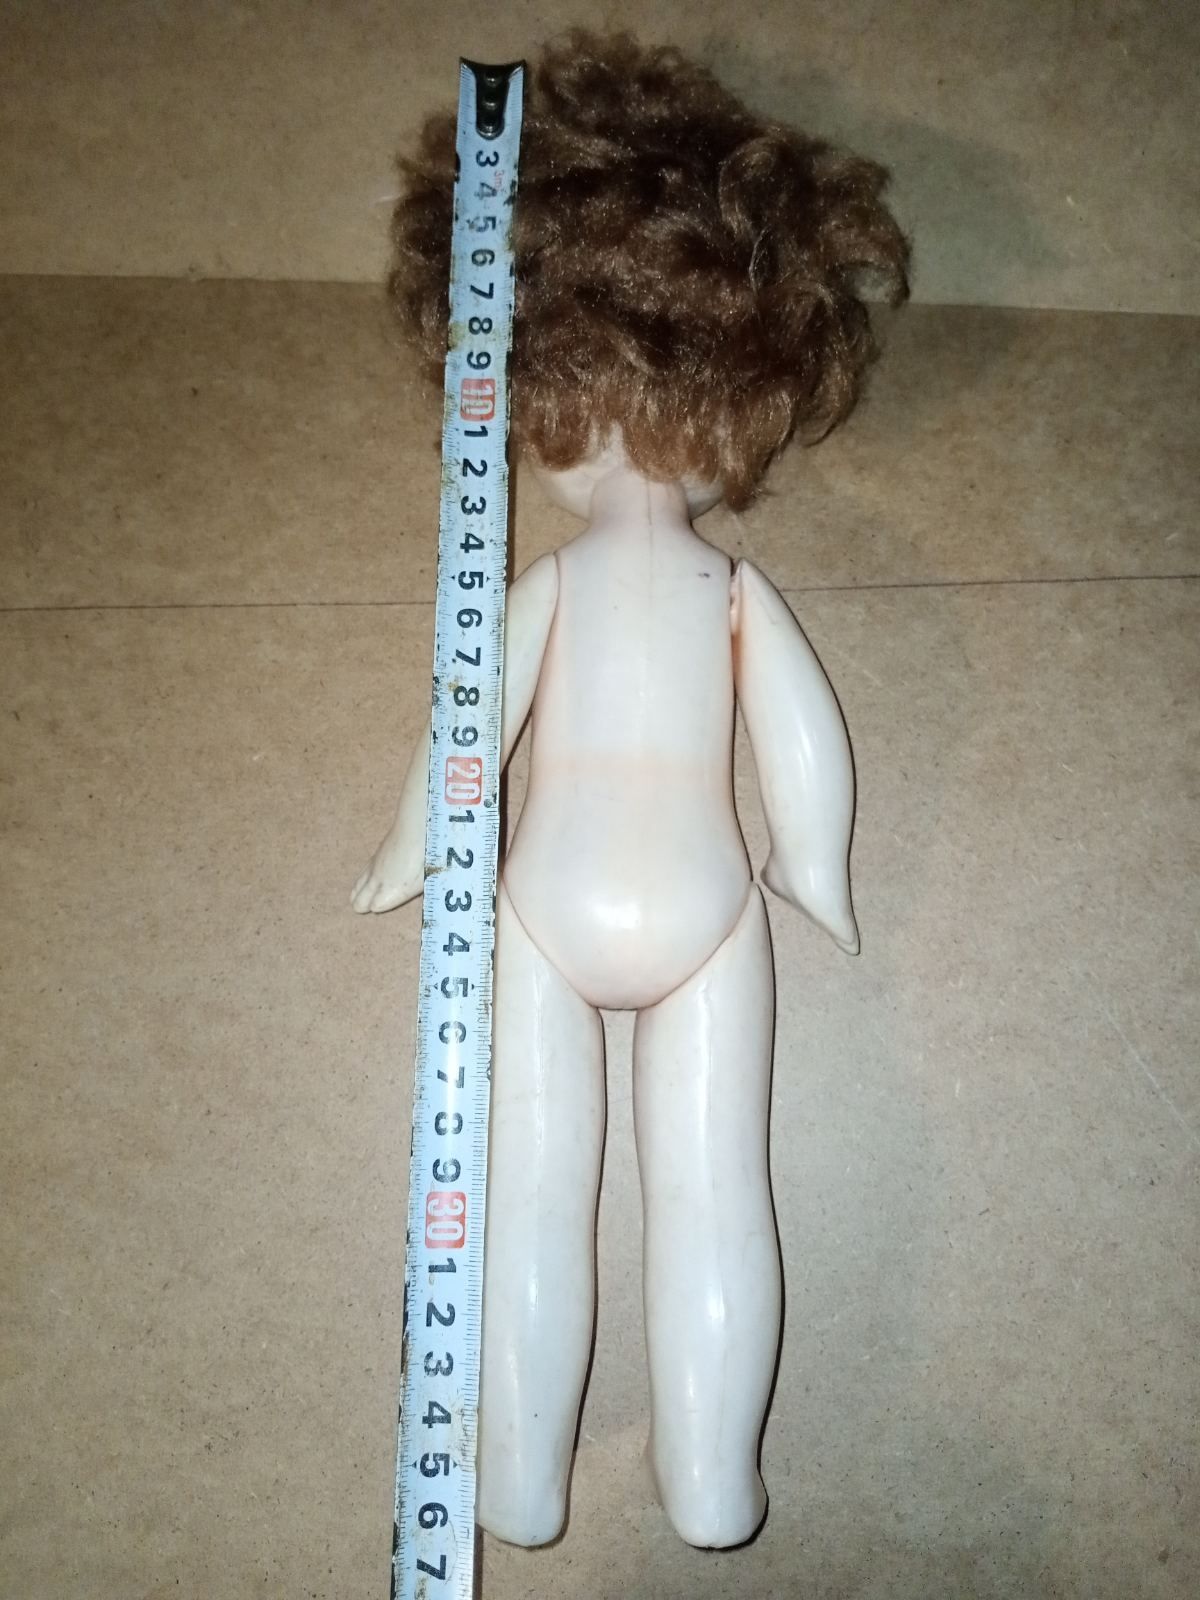 Іграшки дитячі:Ляльки різні радянського виробництва для дівчаток.